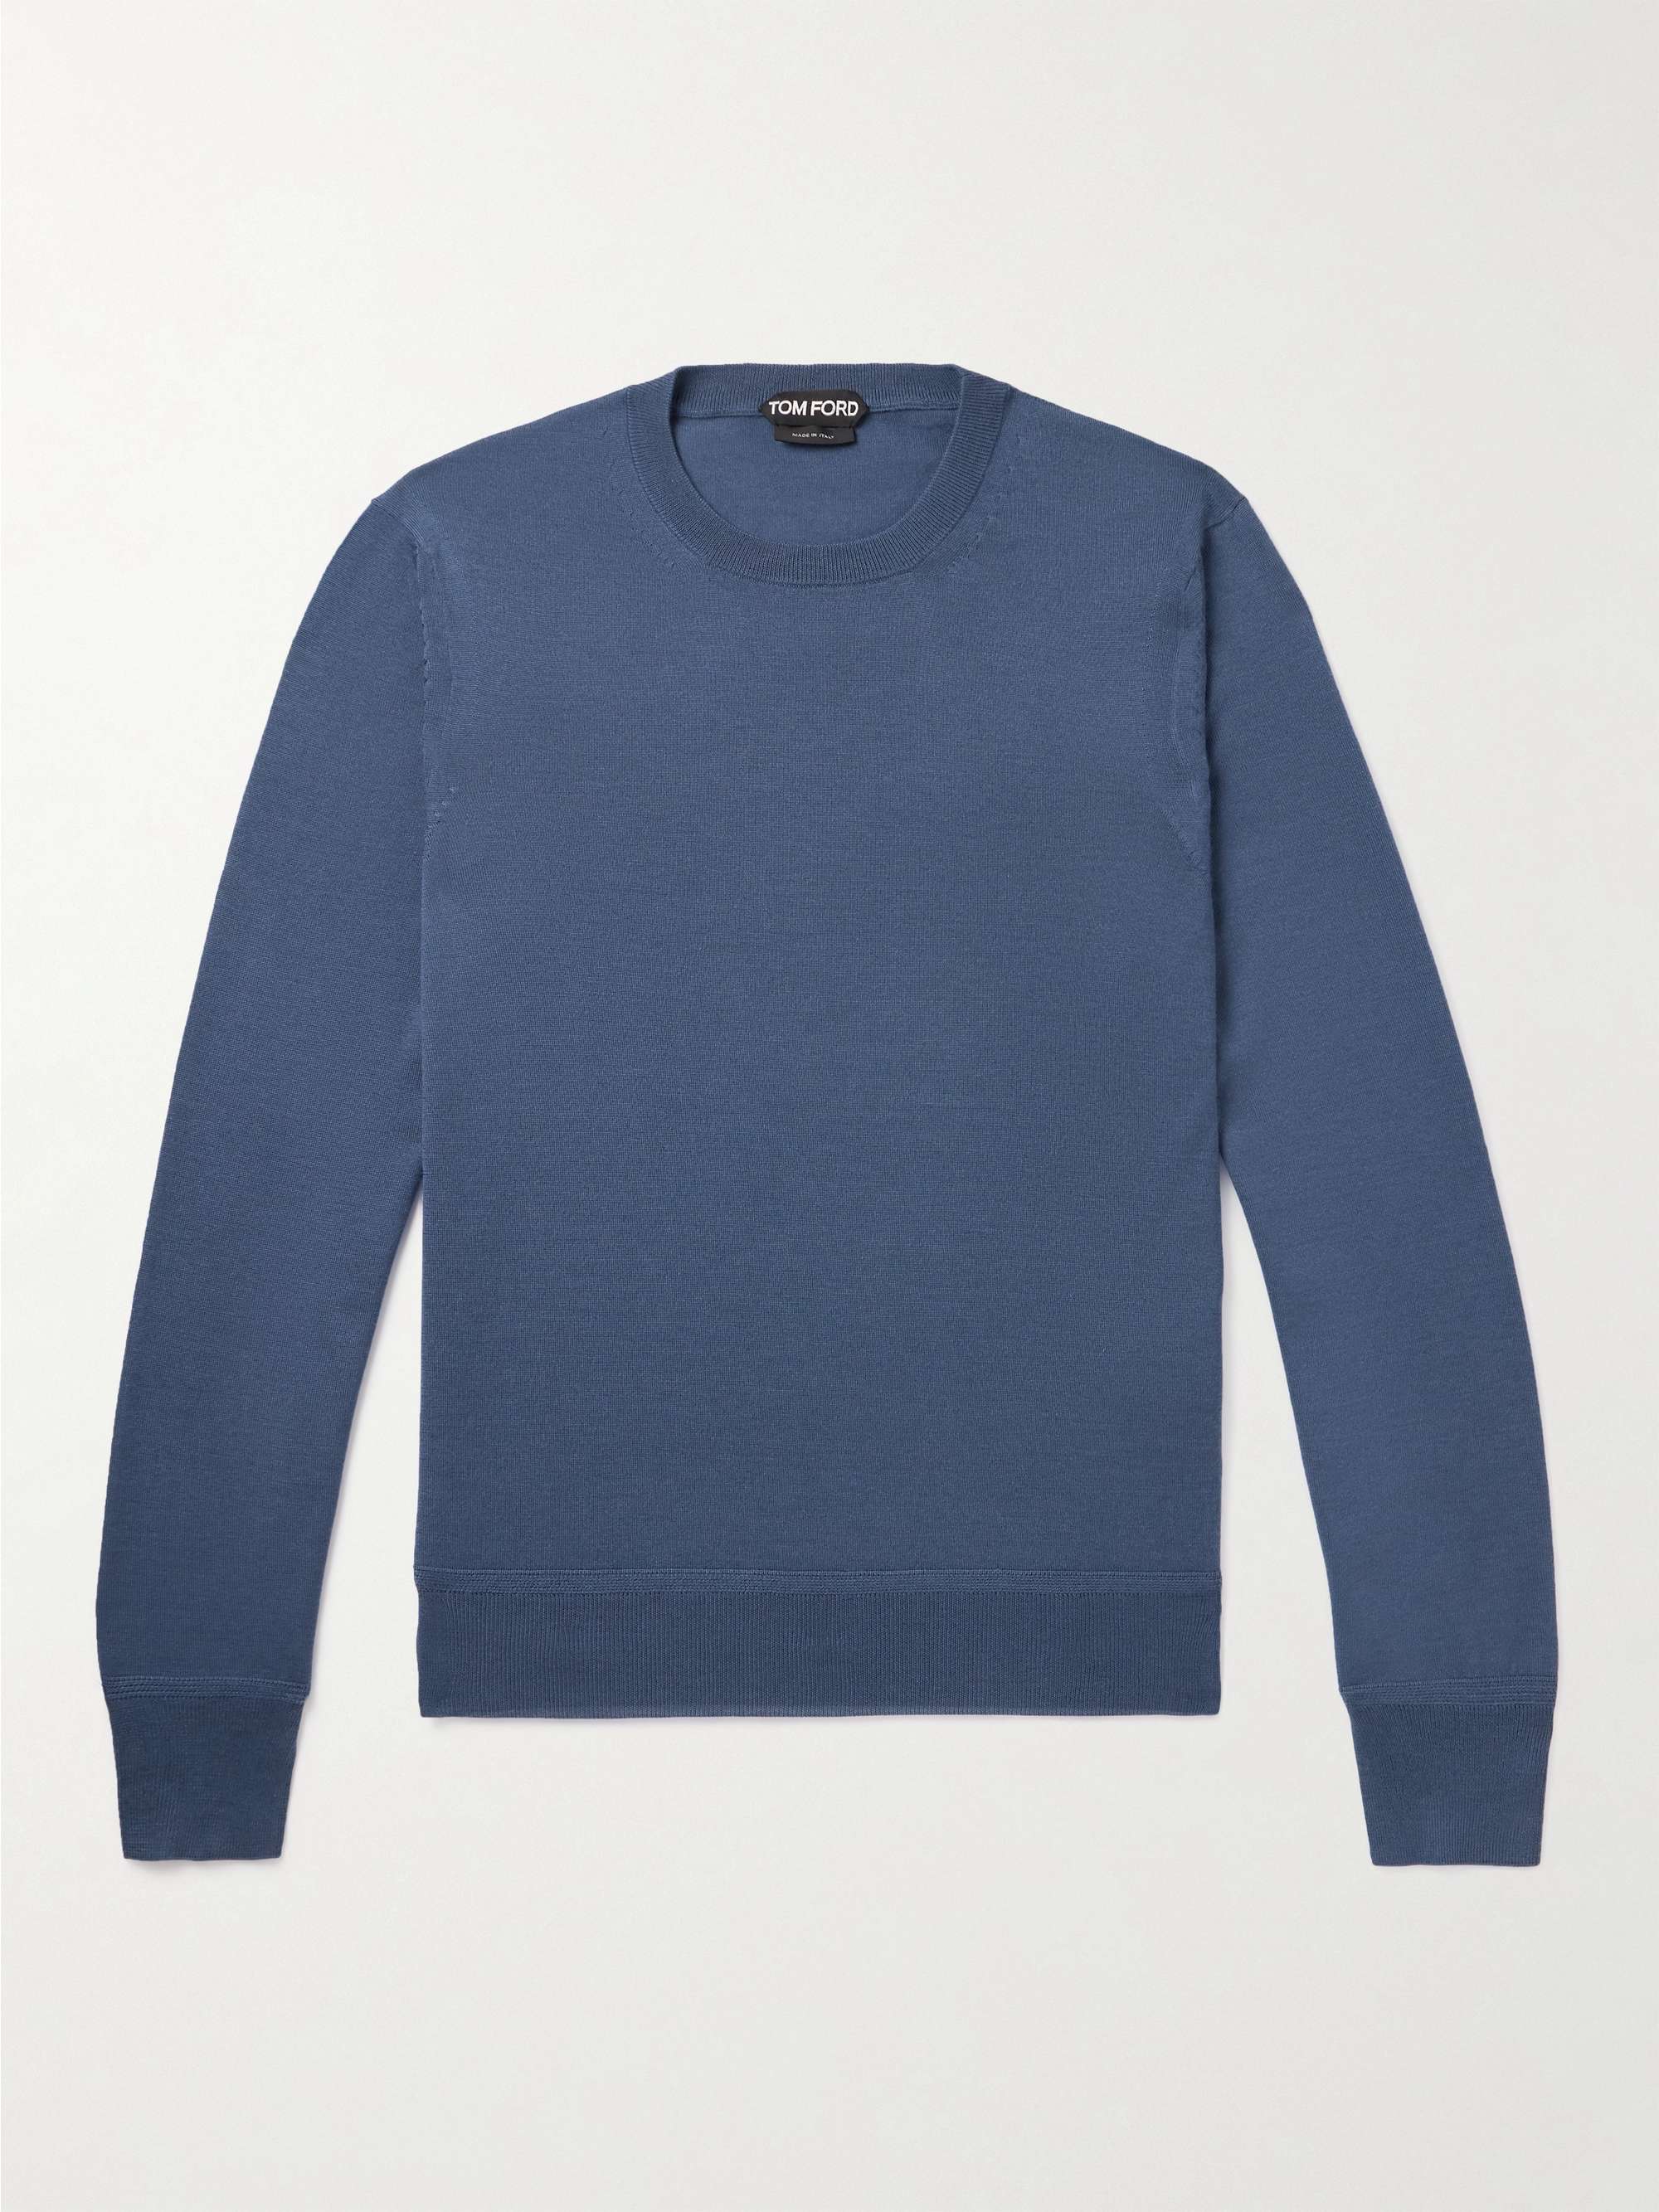 TOM FORD Slim-Fit Cashmere Silk-Blend Sweater for Men | MR PORTER